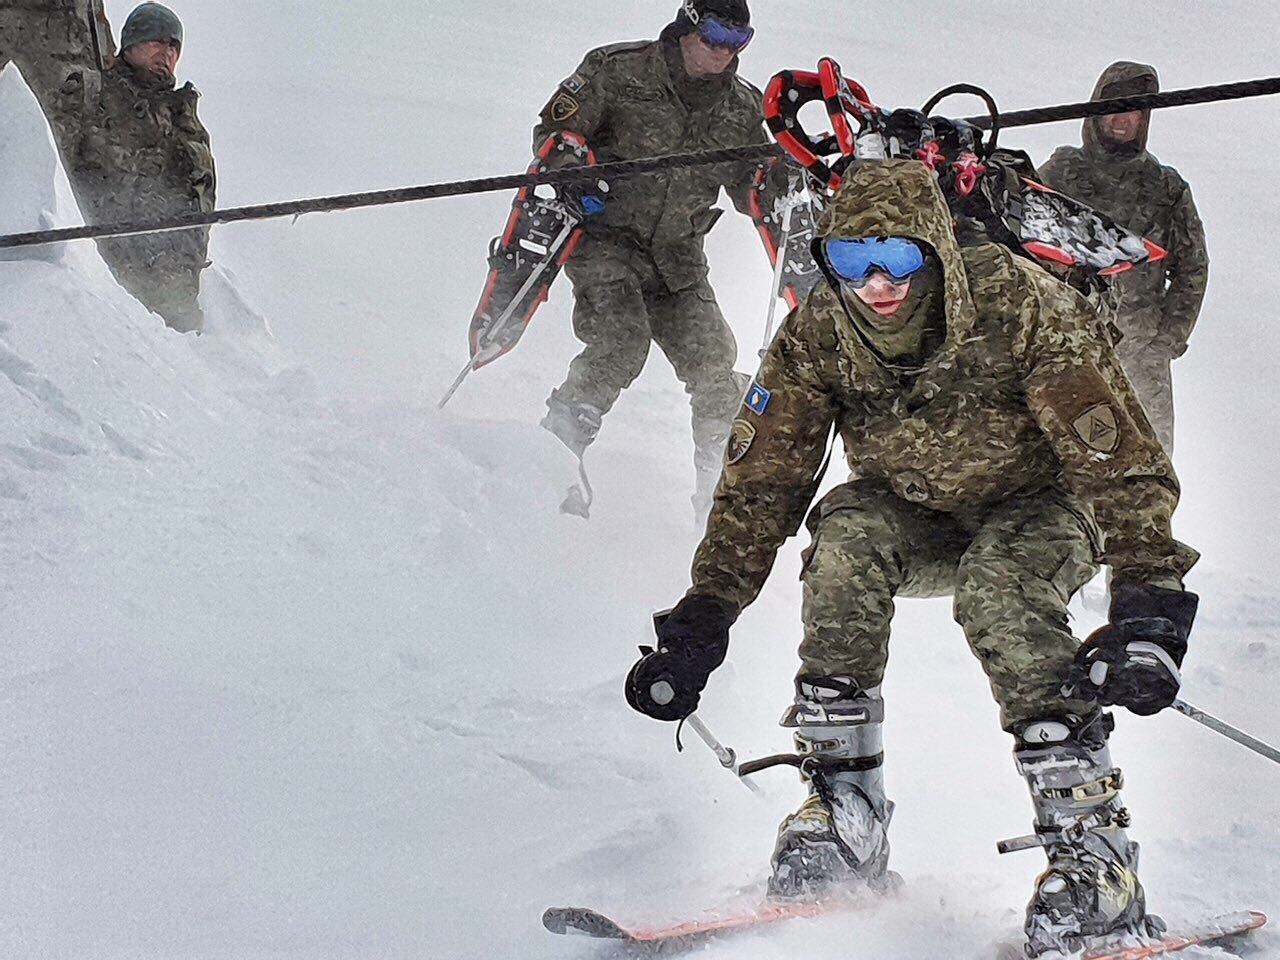 Pak ditë më parë humbi jetën edhe zvëvendës ministri, FSK shkatërron ortekët e borës në Brezovicë